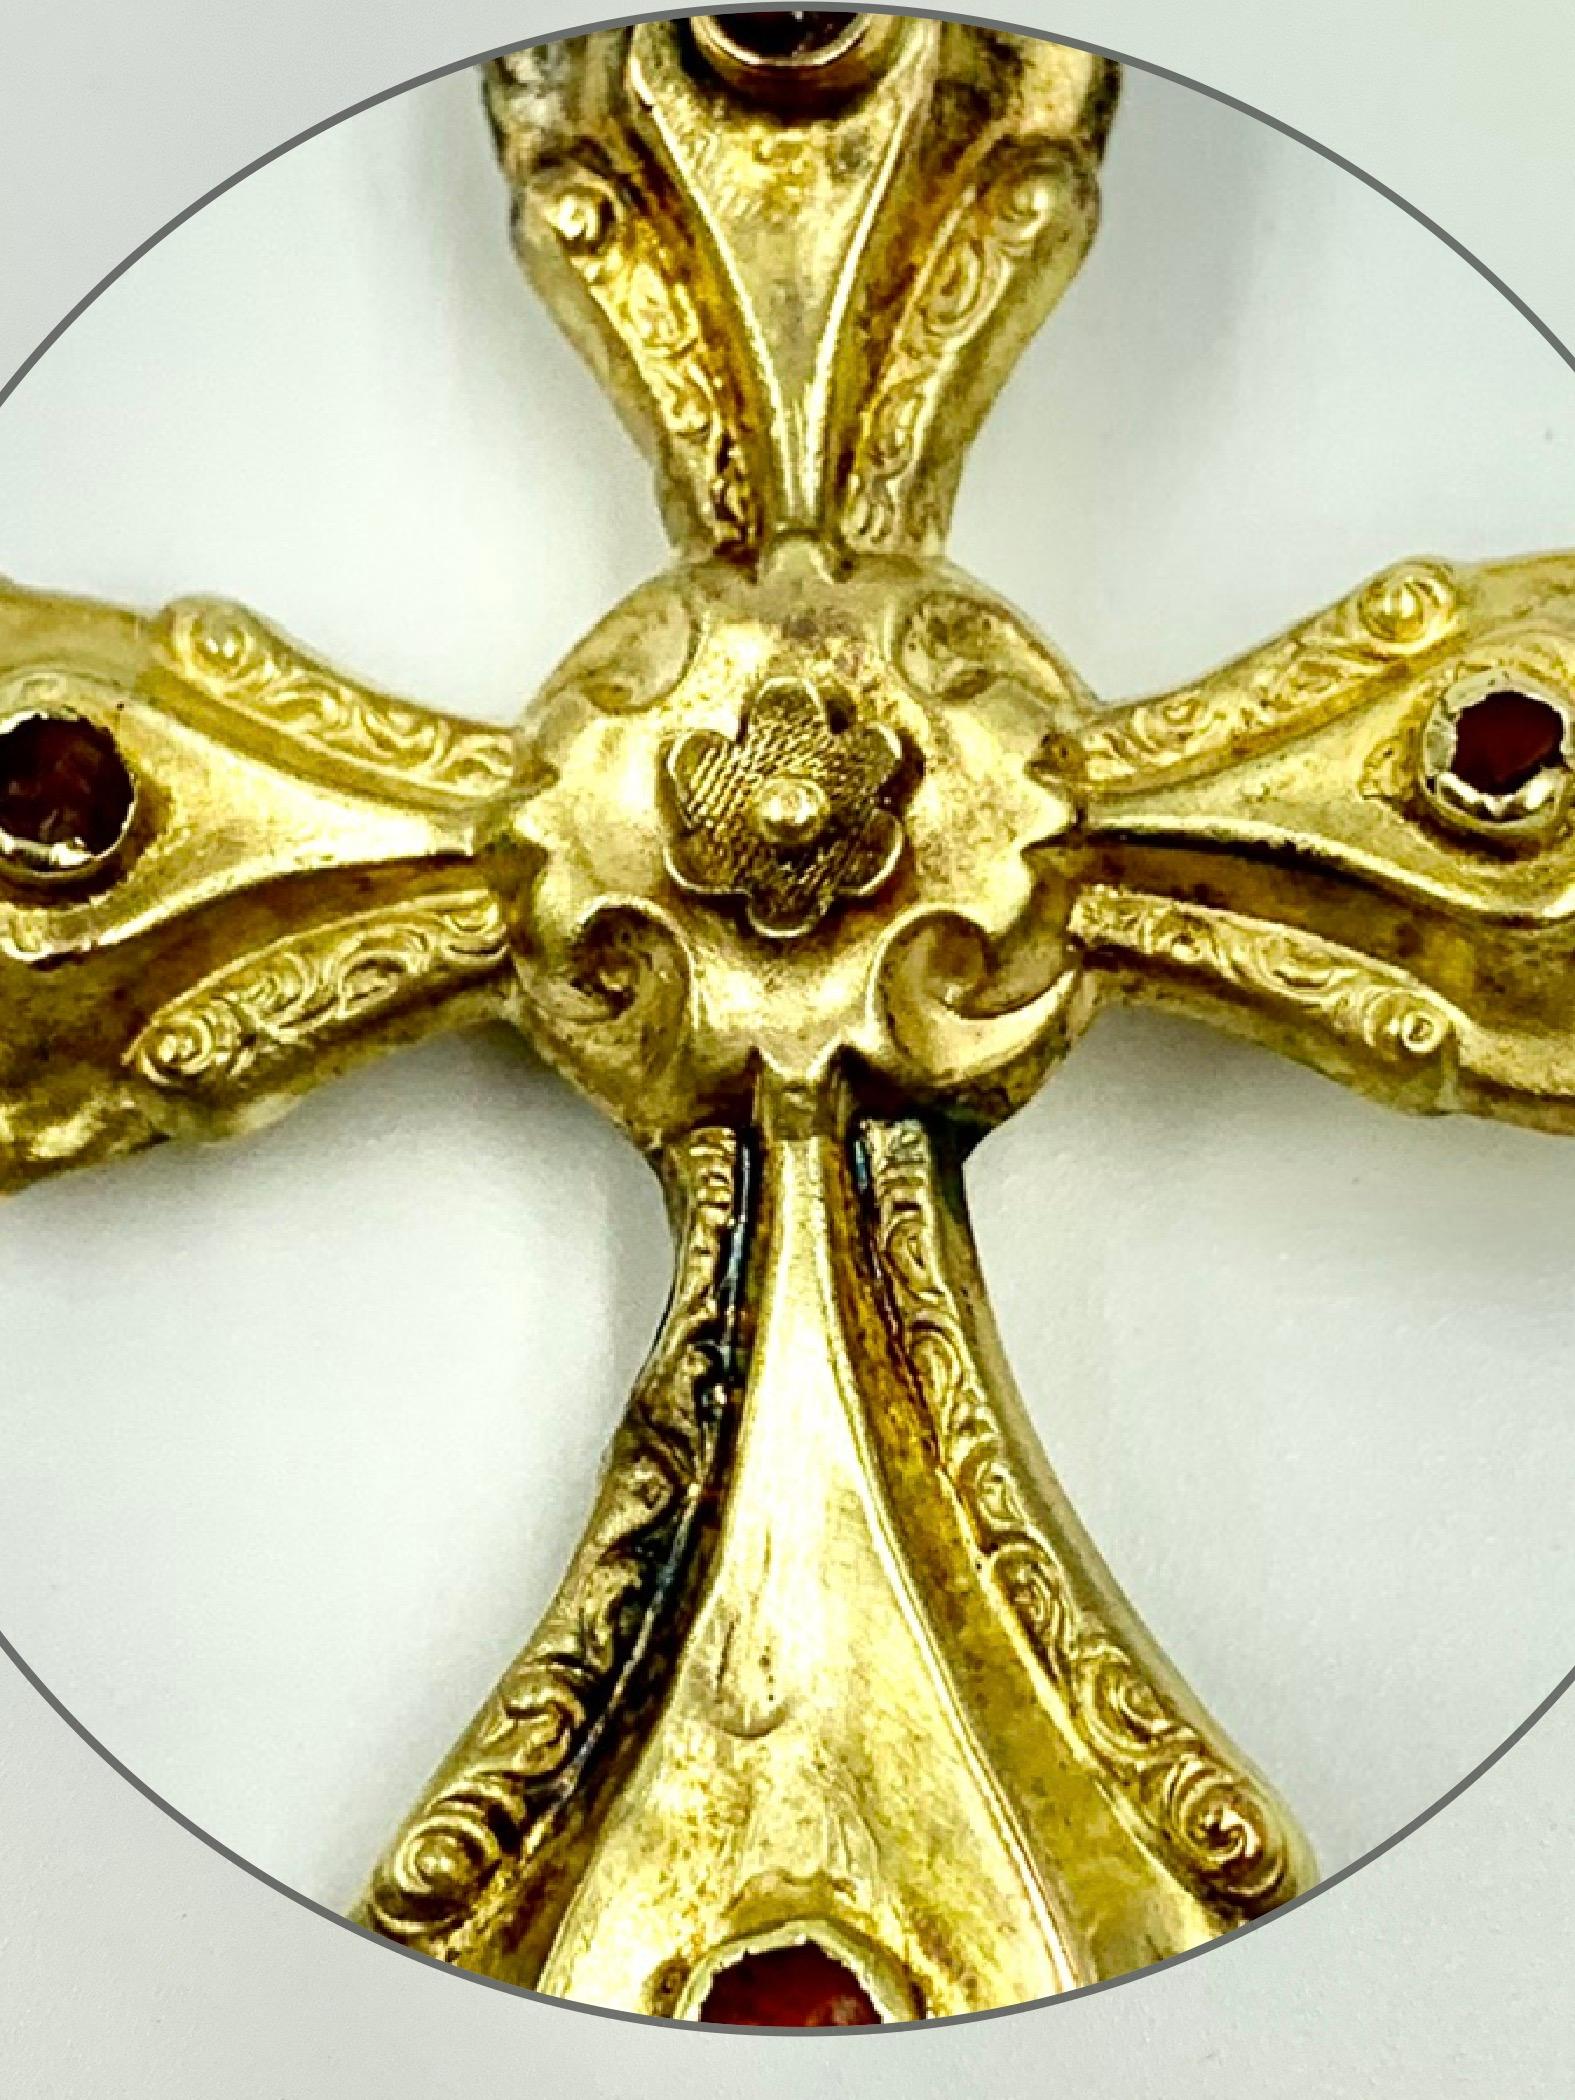 Croix en or d'époque baroque de qualité musée, ornée de rondelles de cornaline cabochon sur chacun des bras et d'un centre floral gravé représentant une rose stylisée. 
17ème siècle
La rose est un symbole du rosicrucianisme, un mouvement spirituel